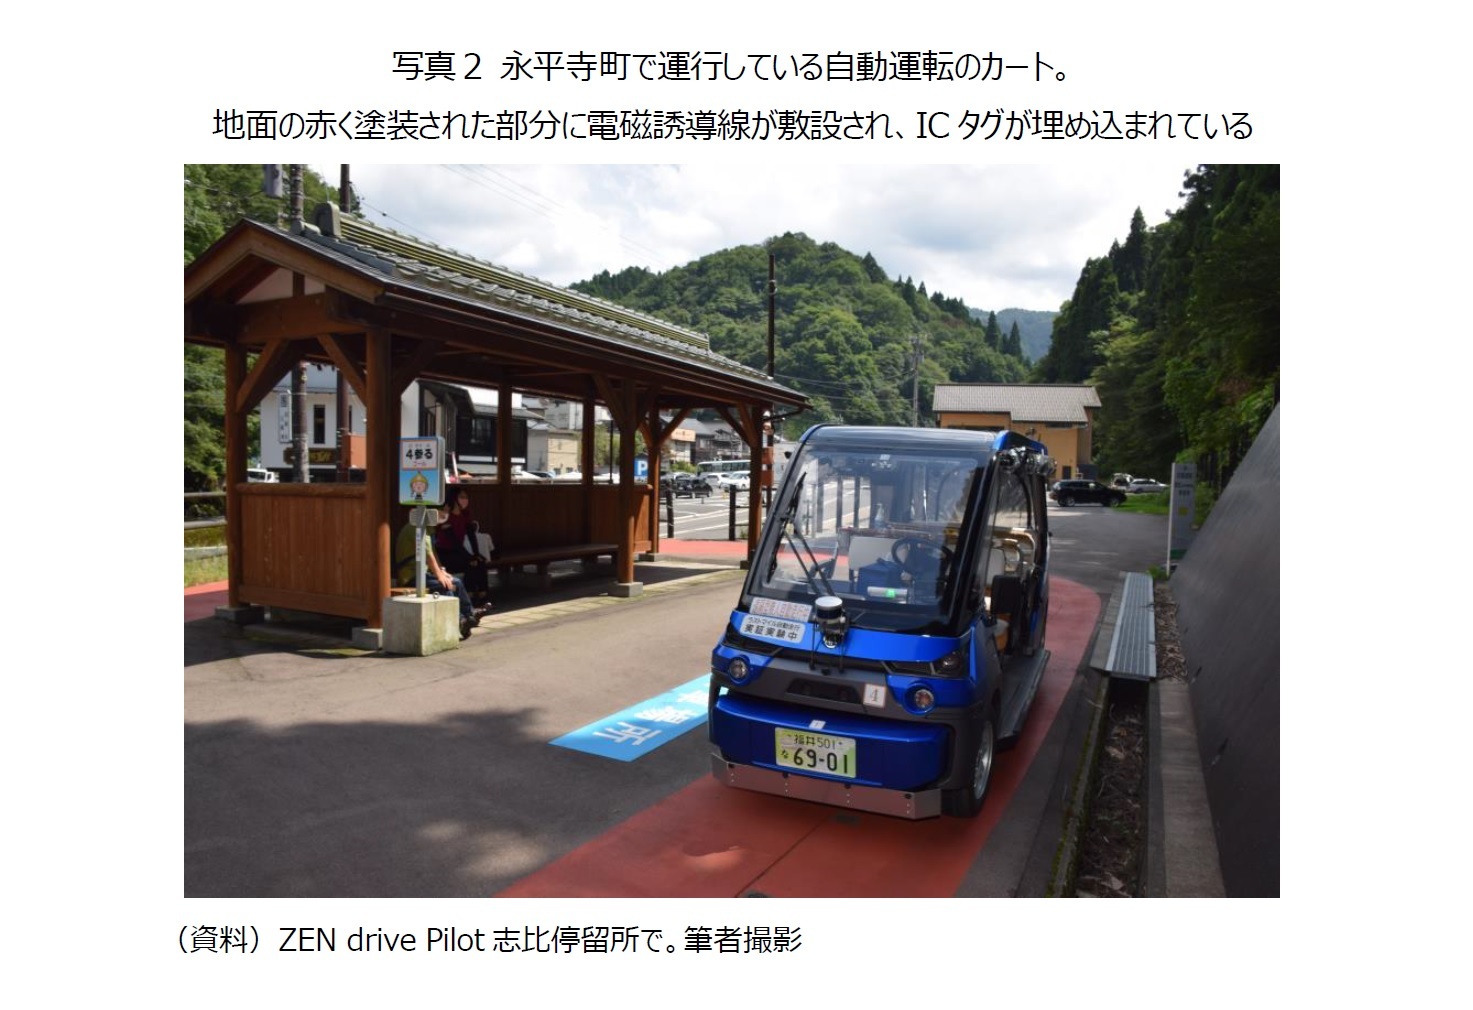 写真２ 永平寺町で運行している自動運転のカート。地面の赤く塗装された部分に電磁誘導線が敷設され、ICタグが埋め込まれている